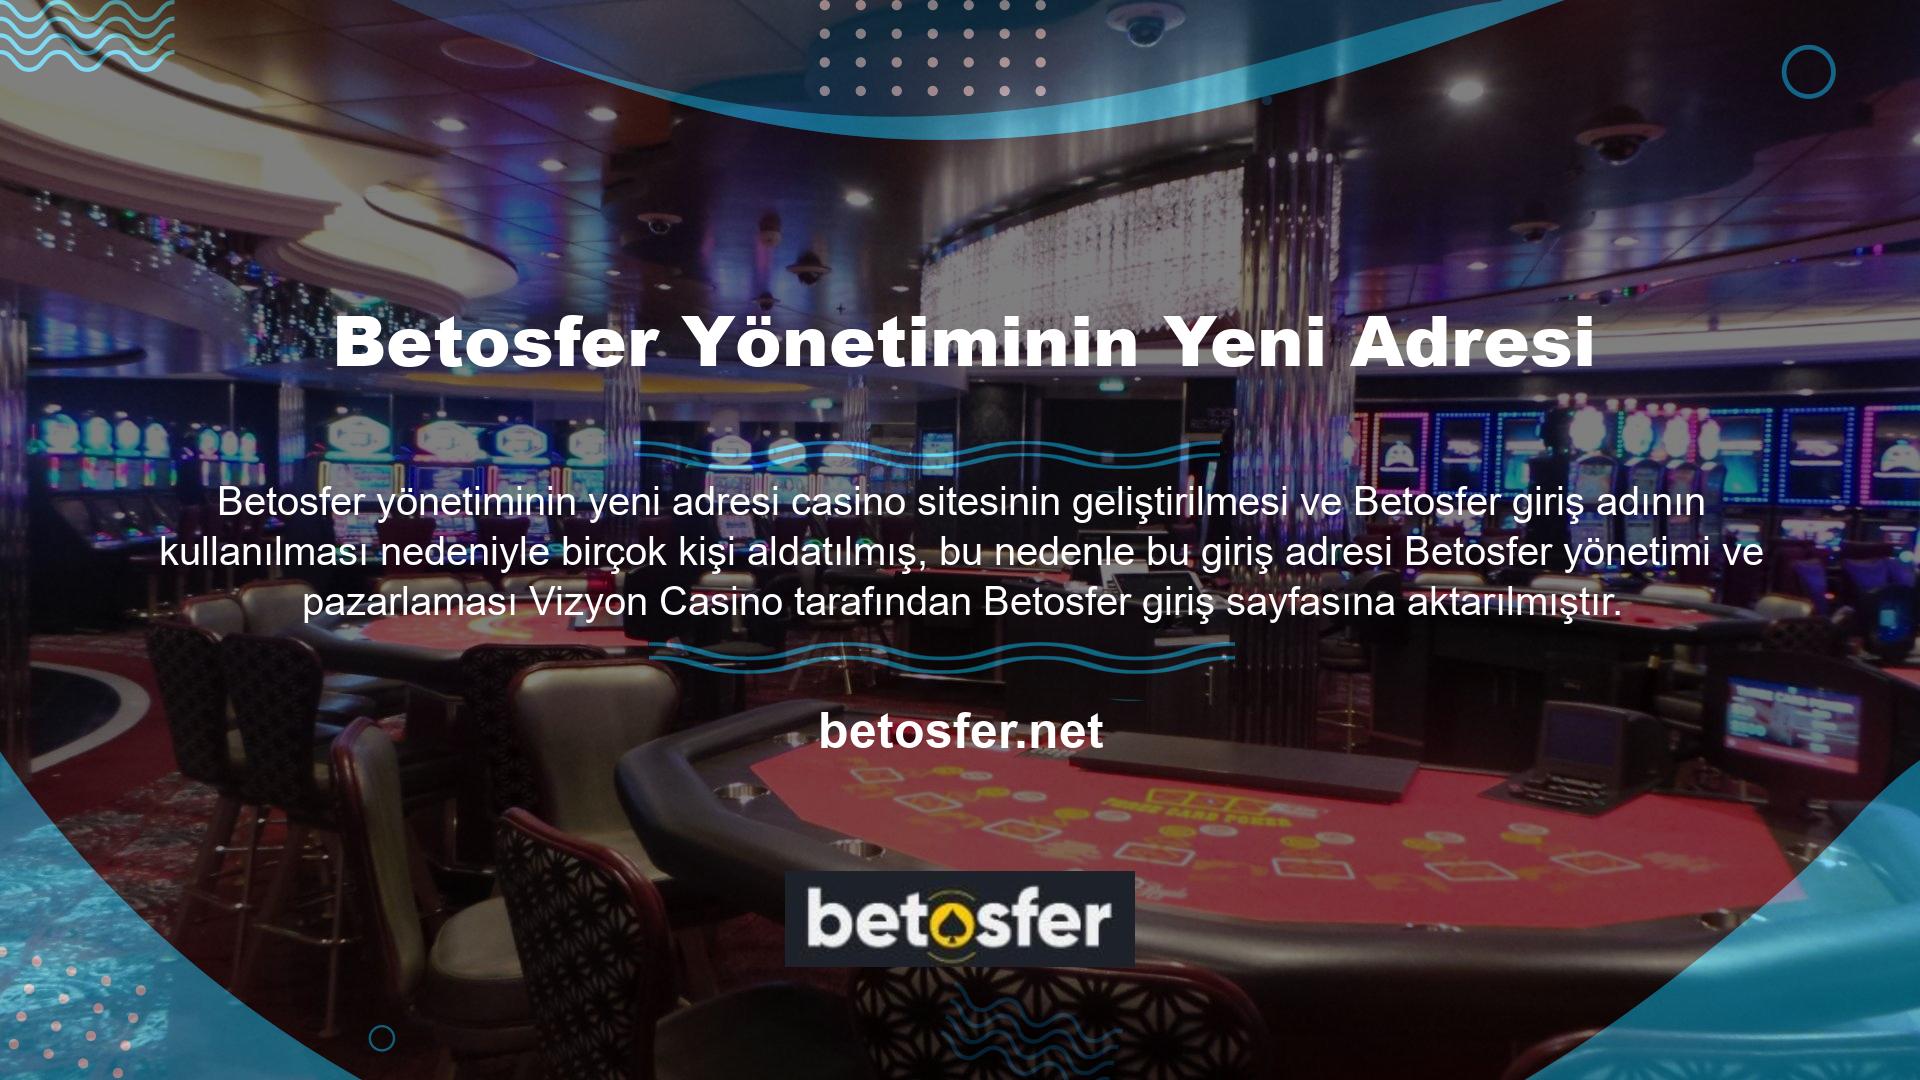 Daha sonra Betosfer Casino adı altında diğer tüm casino siteleri için giriş sayfaları oluşturdu ve kullanıcıları gerçek Betosfer Casino sitesine yönlendirmeye başladı